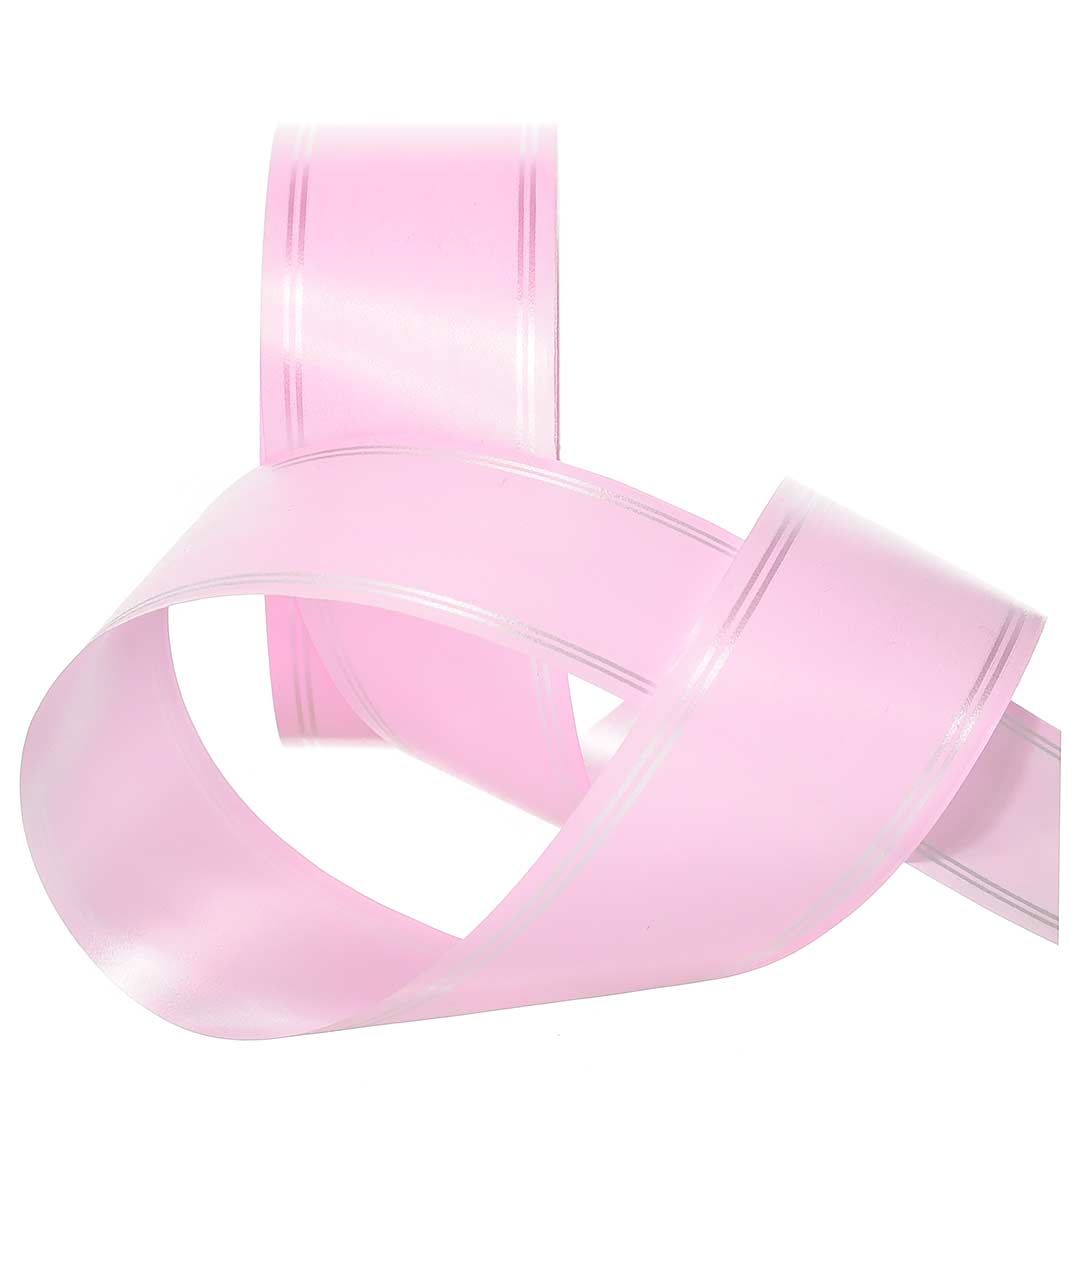 Изображение Лента полипропиленовая светло-розовая Shax 50мм